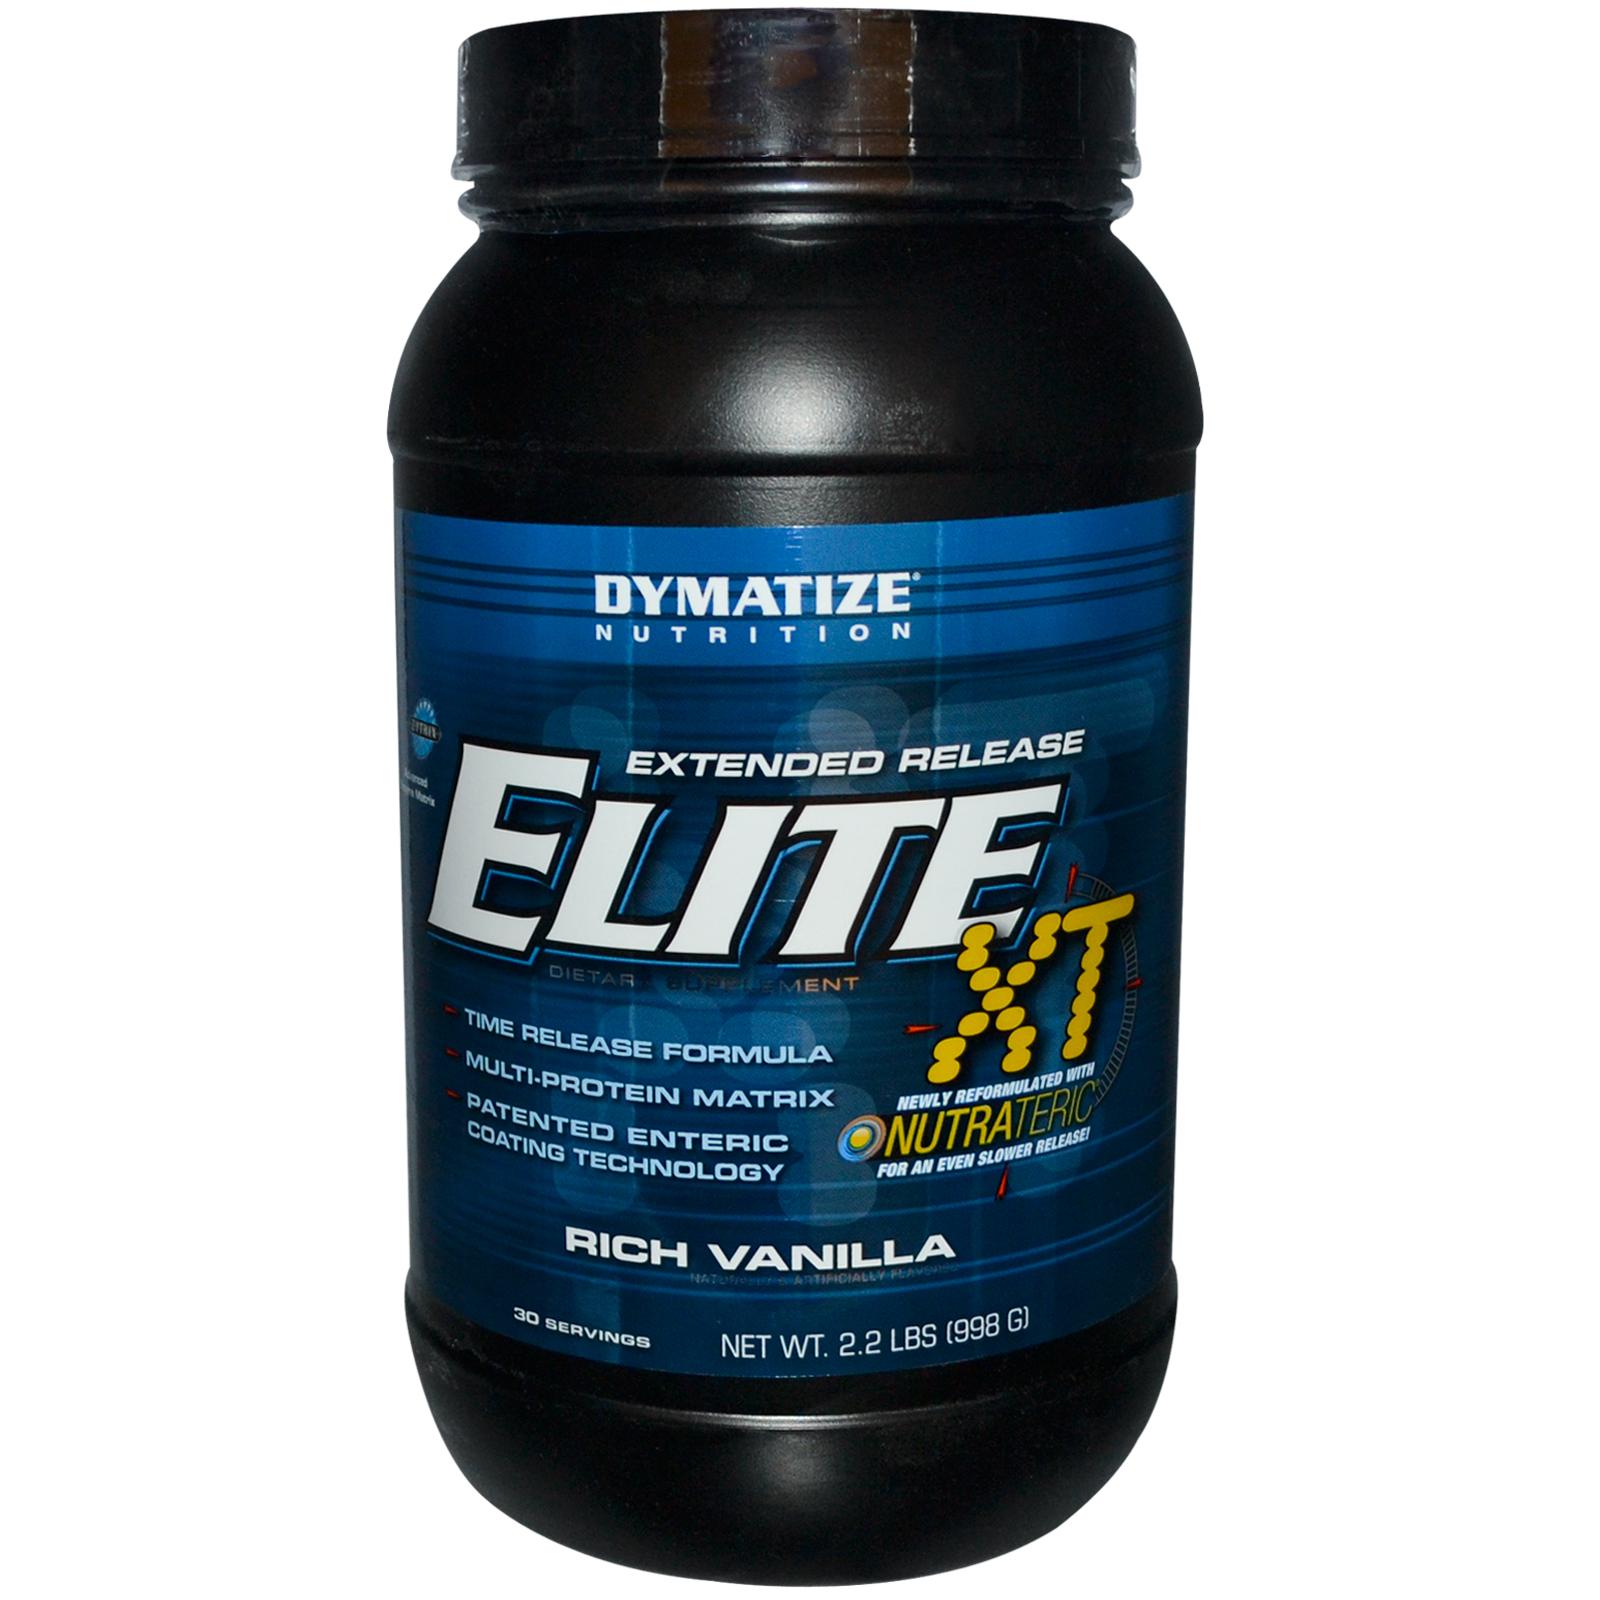 Elite XT, 998 g, Dymatize Nutrition. Protein Blend. 